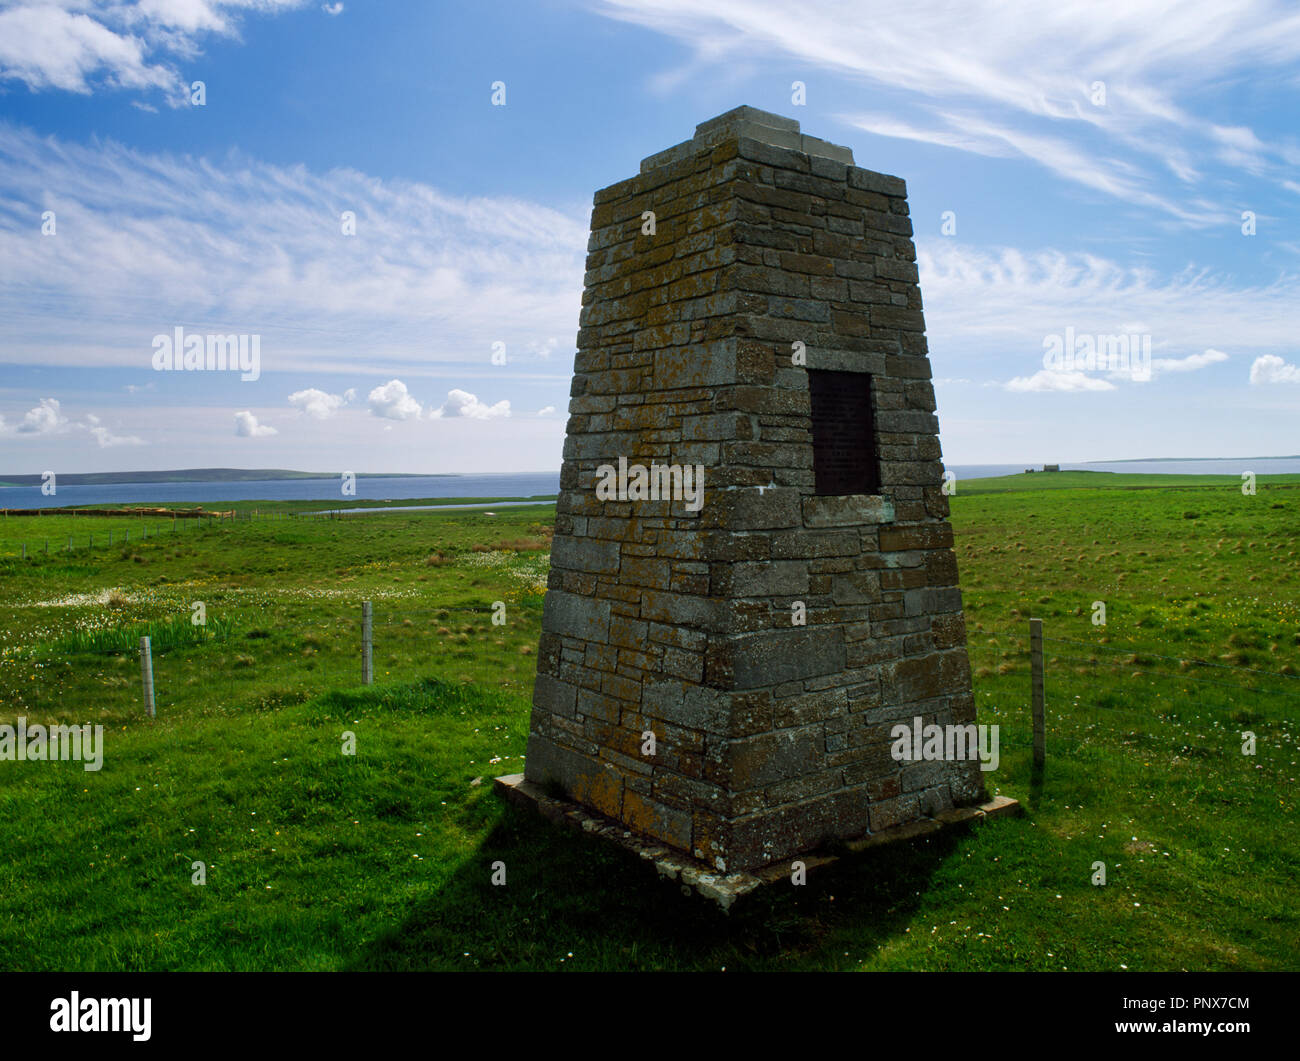 St Magnus il Cenotafio, Egilsay, isole Orcadi Scozia, Regno Unito, istituito nel 1937 per contrassegnare il tradizionale luogo del martirio di Earl Magnus Erlendsson in ANNUNCIO1116/7. Foto Stock